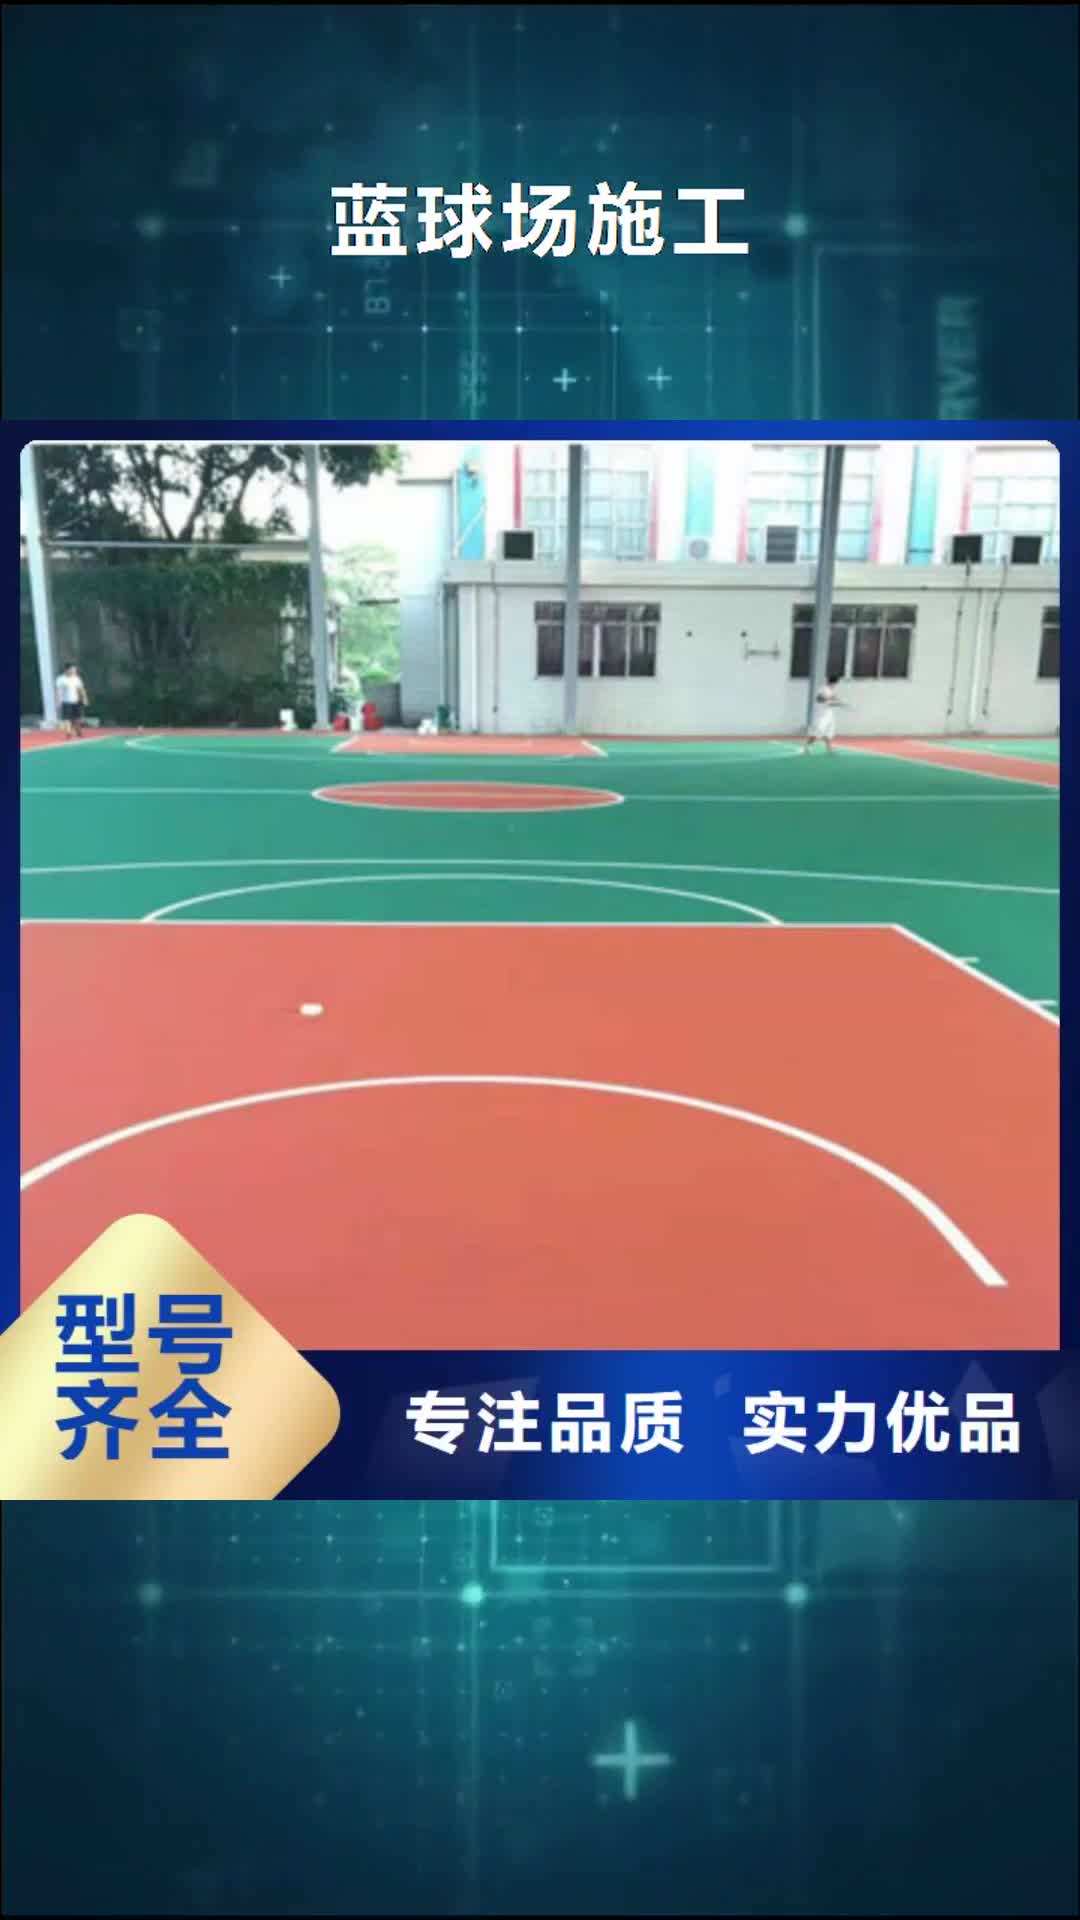 日照【蓝球场施工】 硅pu篮球场货源直销